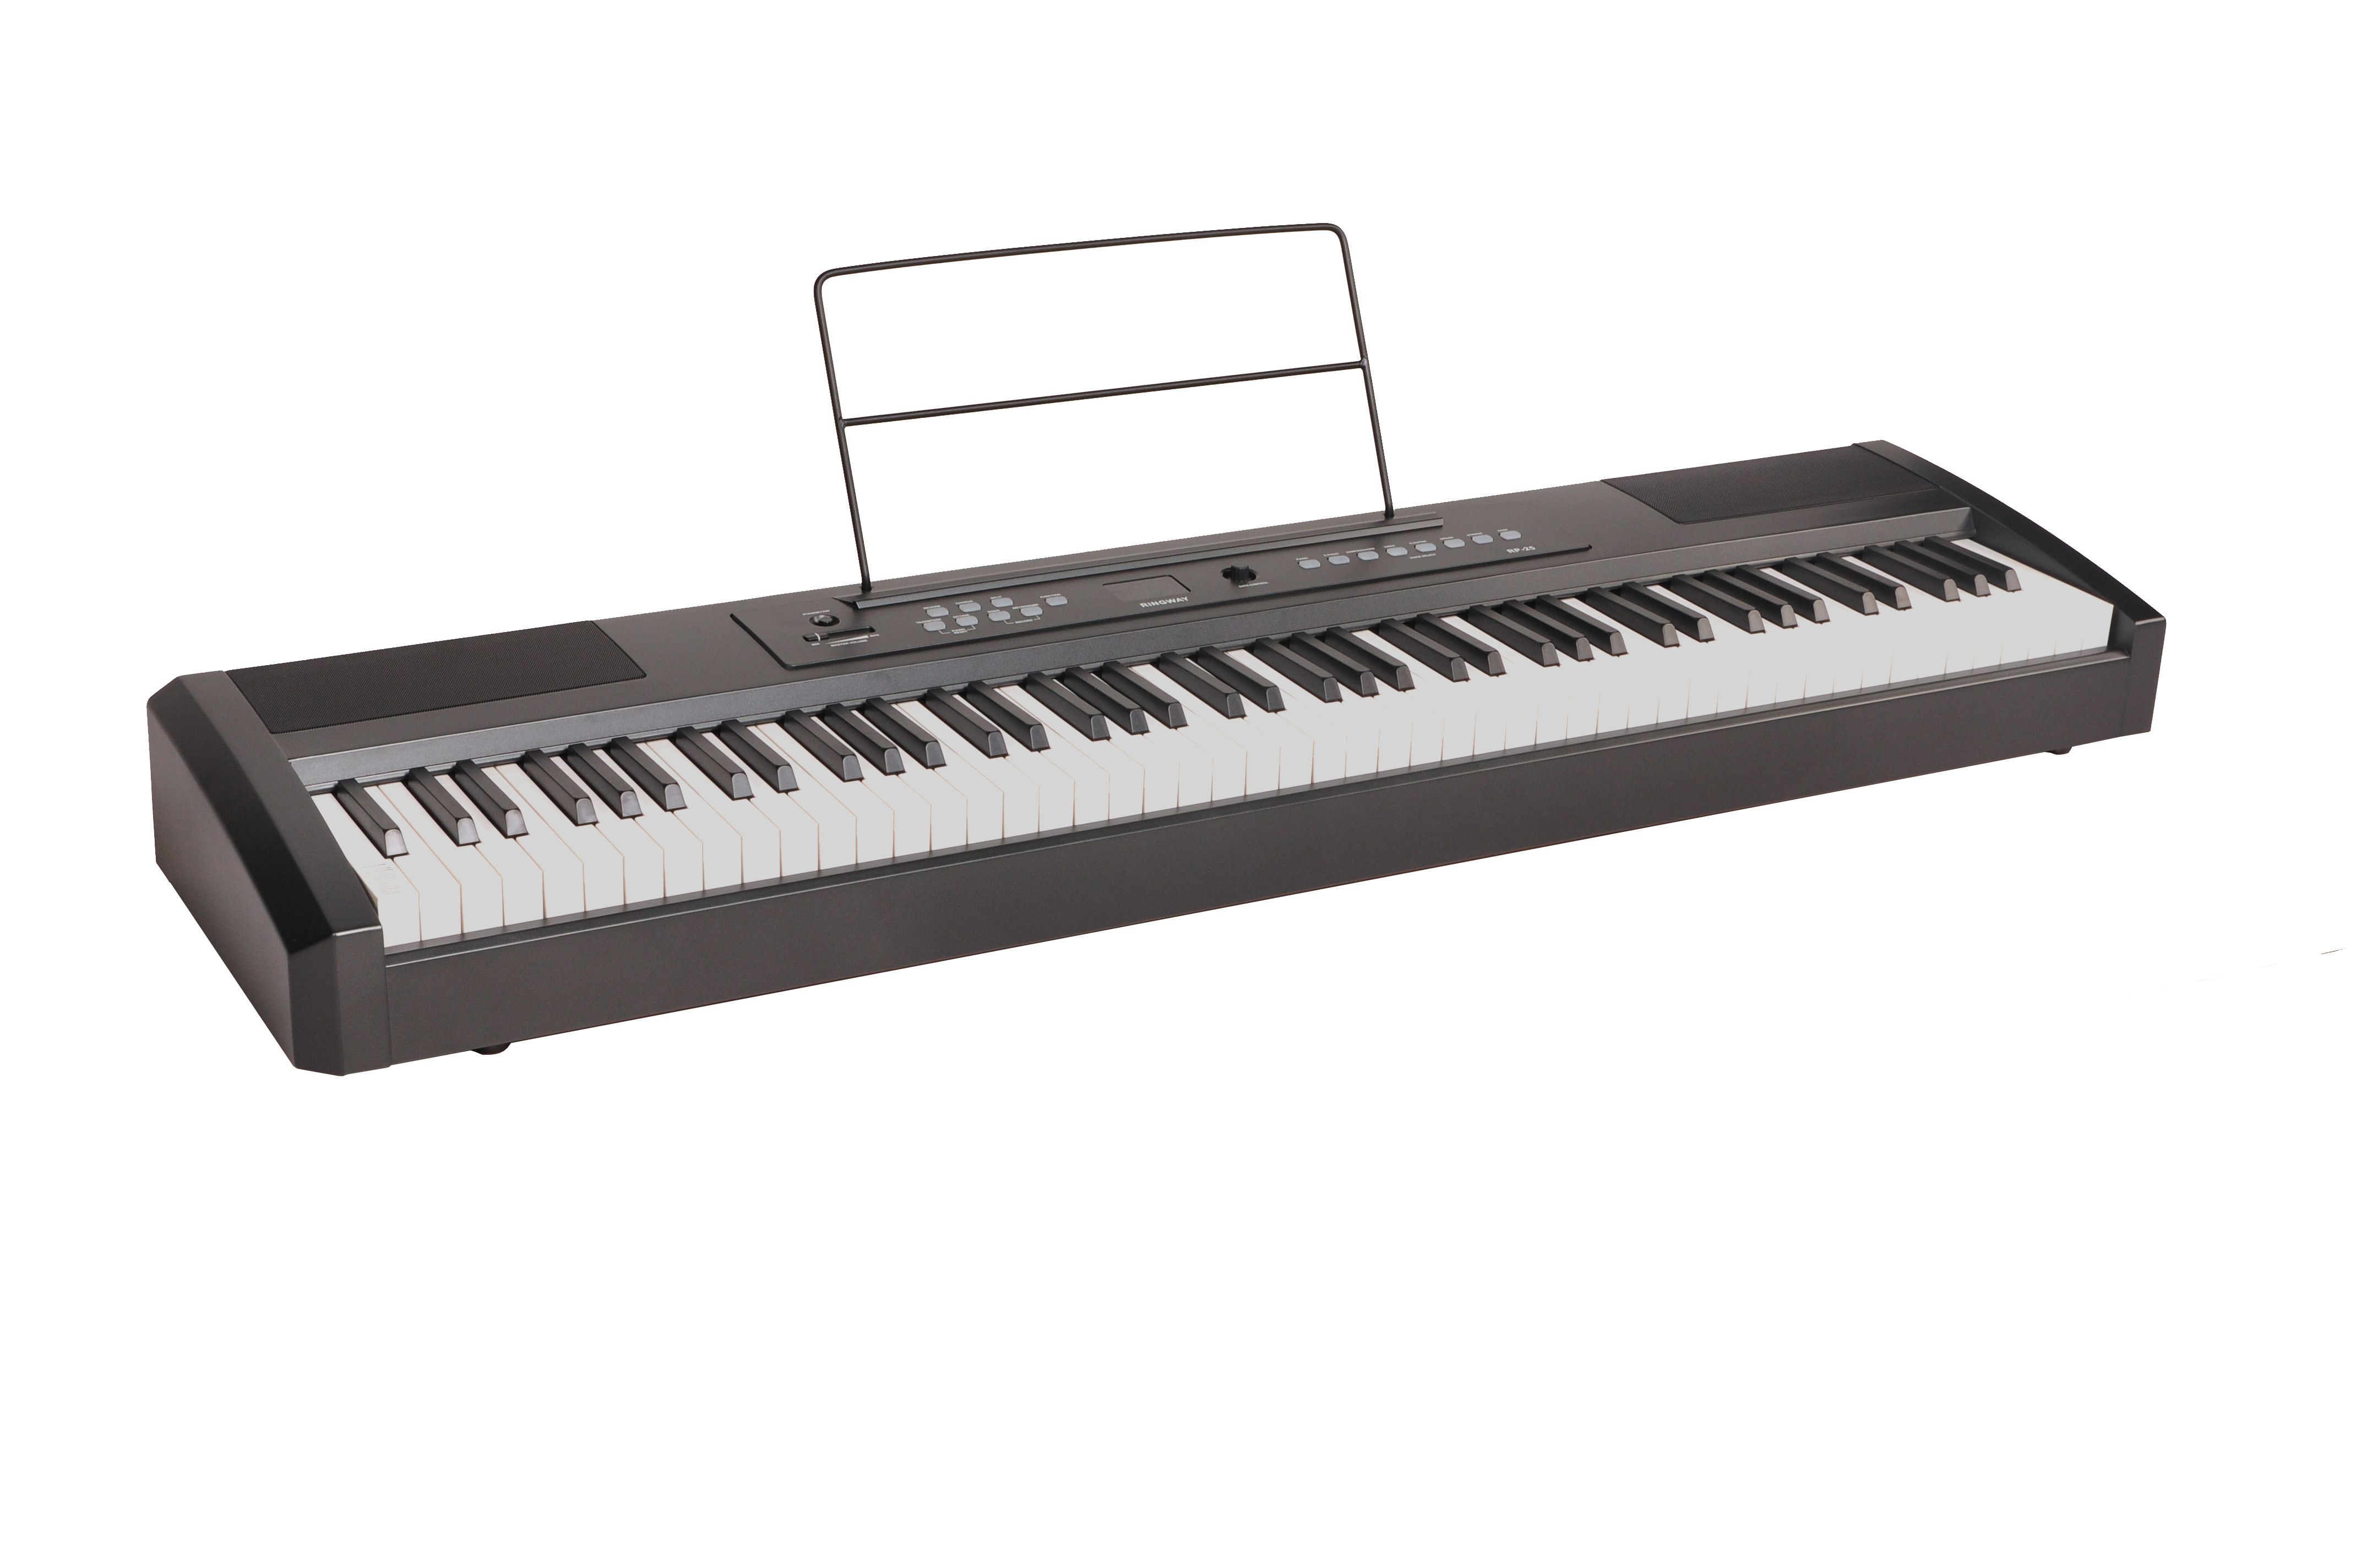 Картинка Цифровое фортепиано Ringway RP-25 - лучшая цена, доставка по России. Фото N2